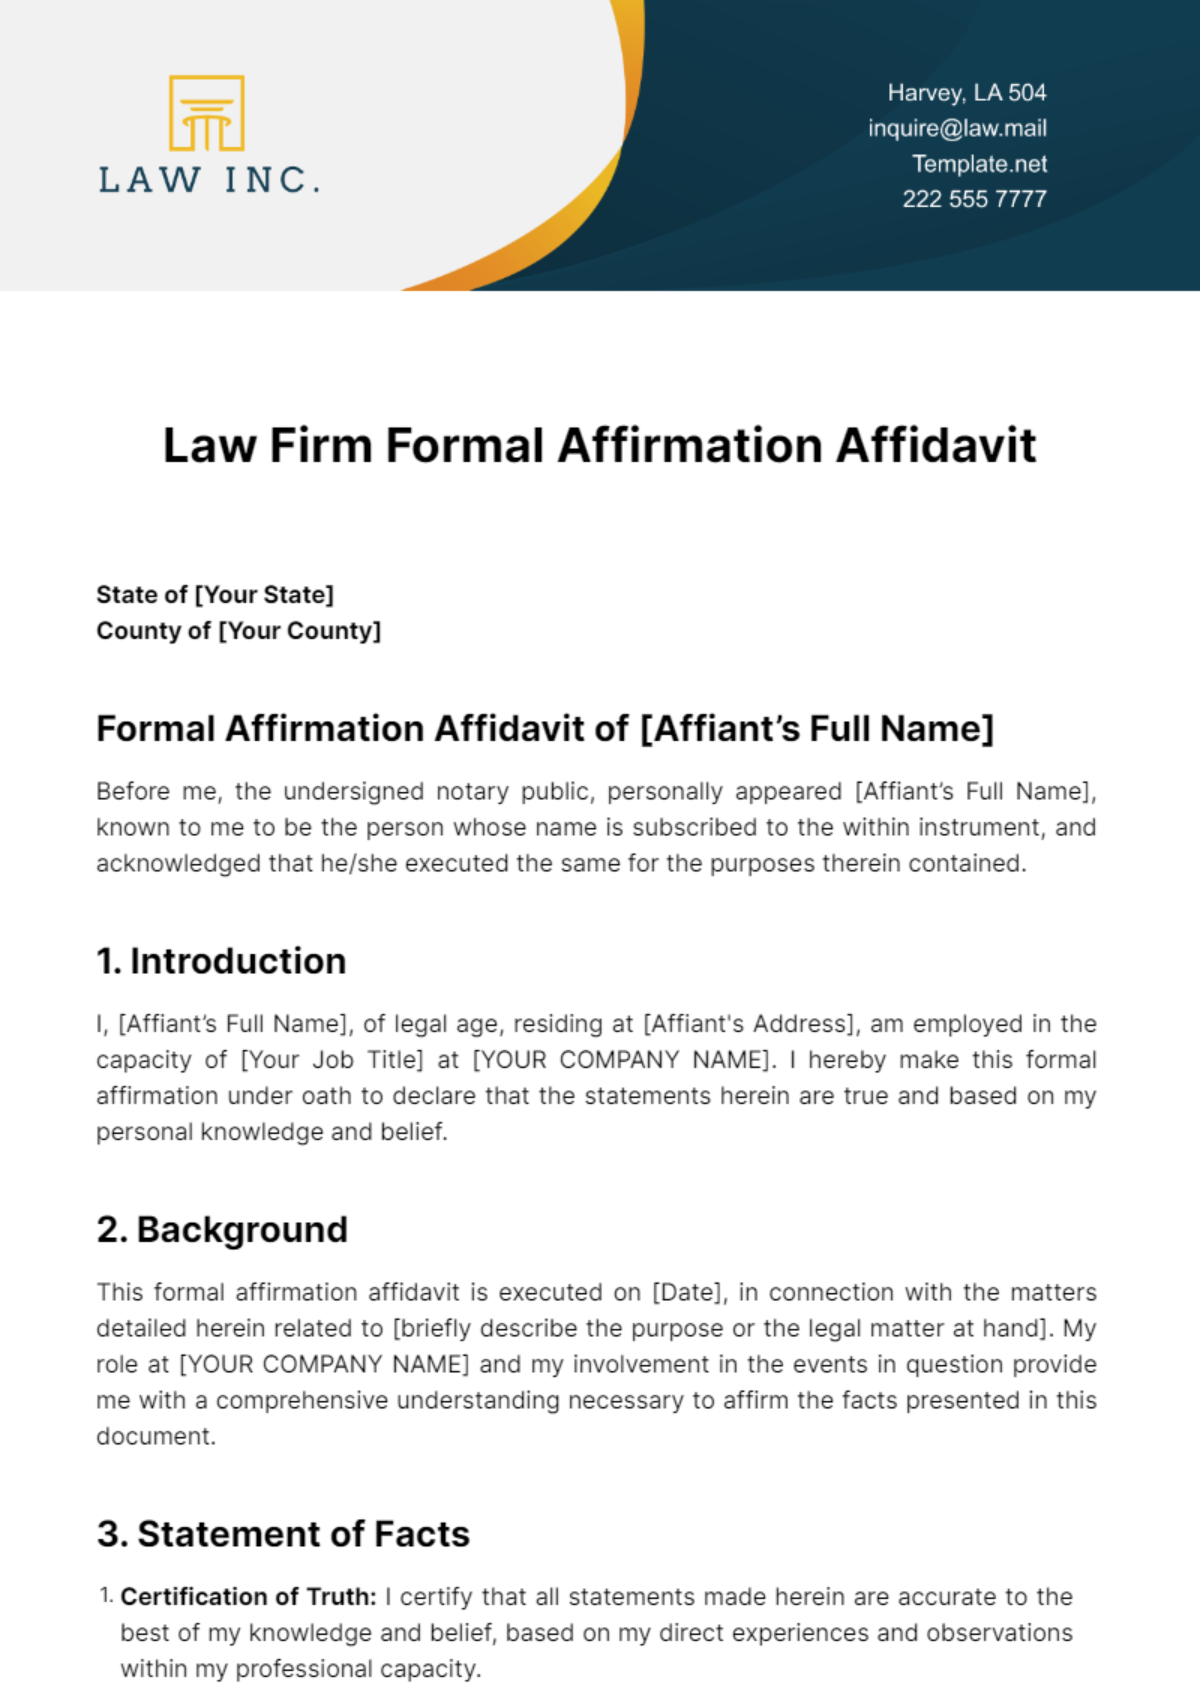 Law Firm Formal Affirmation Affidavit Template